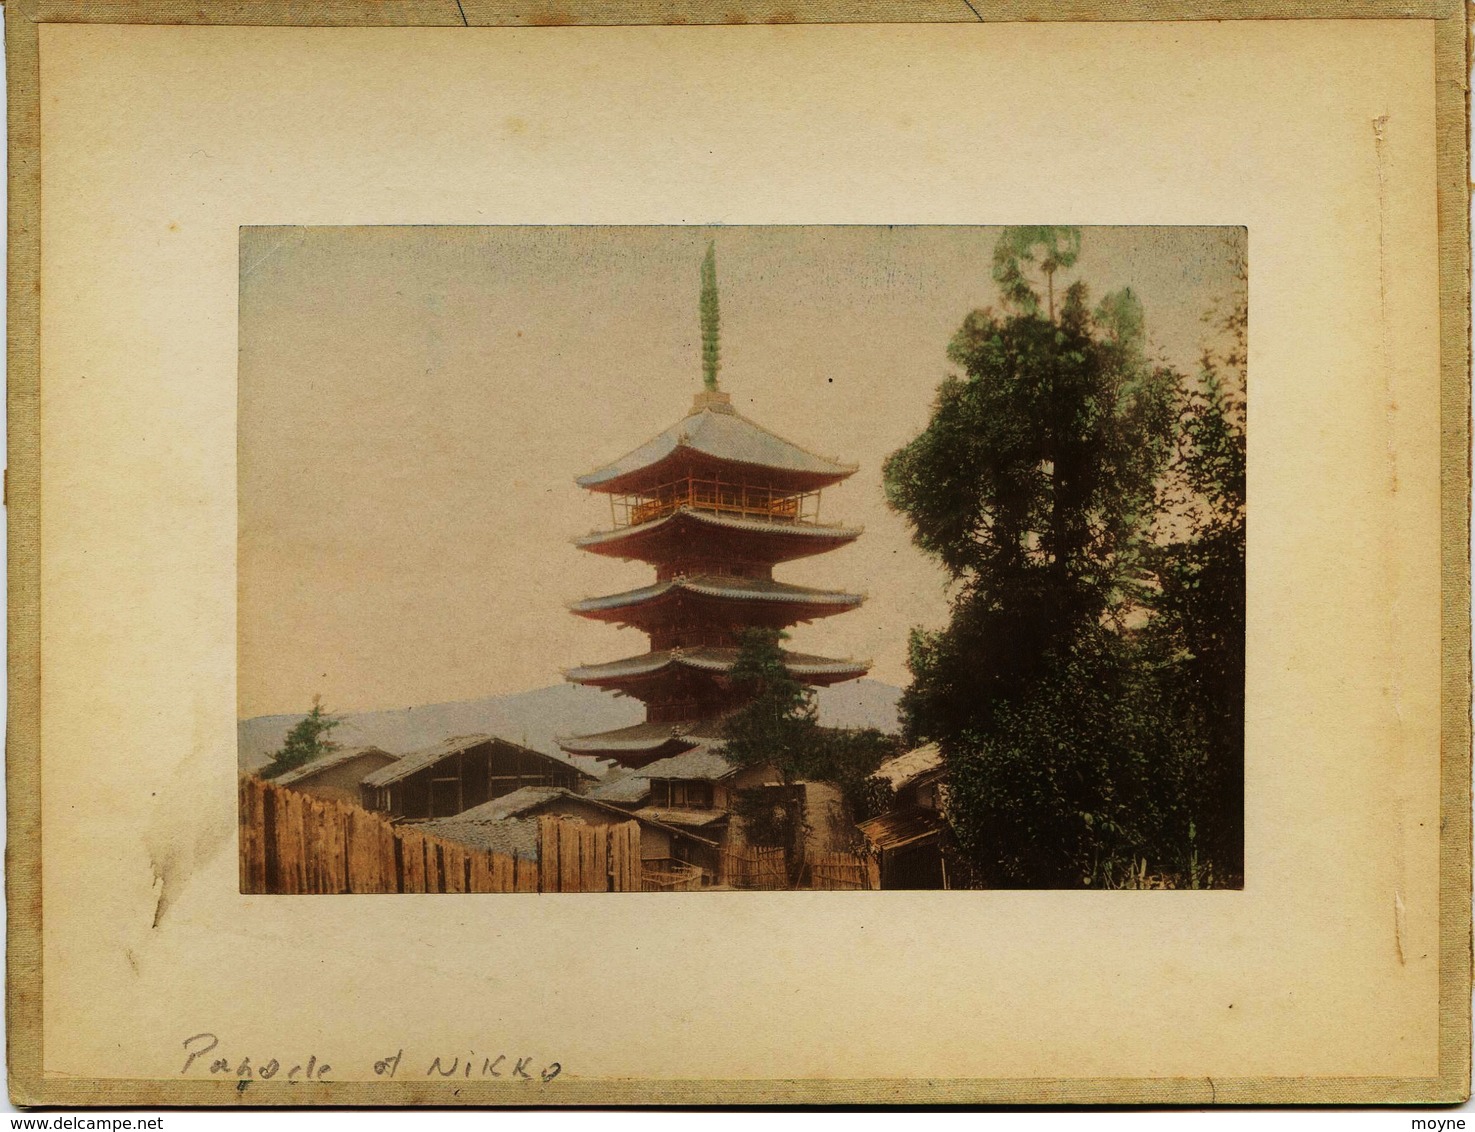 2 Photos Du Japon - XIXéme - Sur Papier Albuminé  - 1)  PAGODA AT NIKKO    2) PARC  AT NIKKO - Anciennes (Av. 1900)